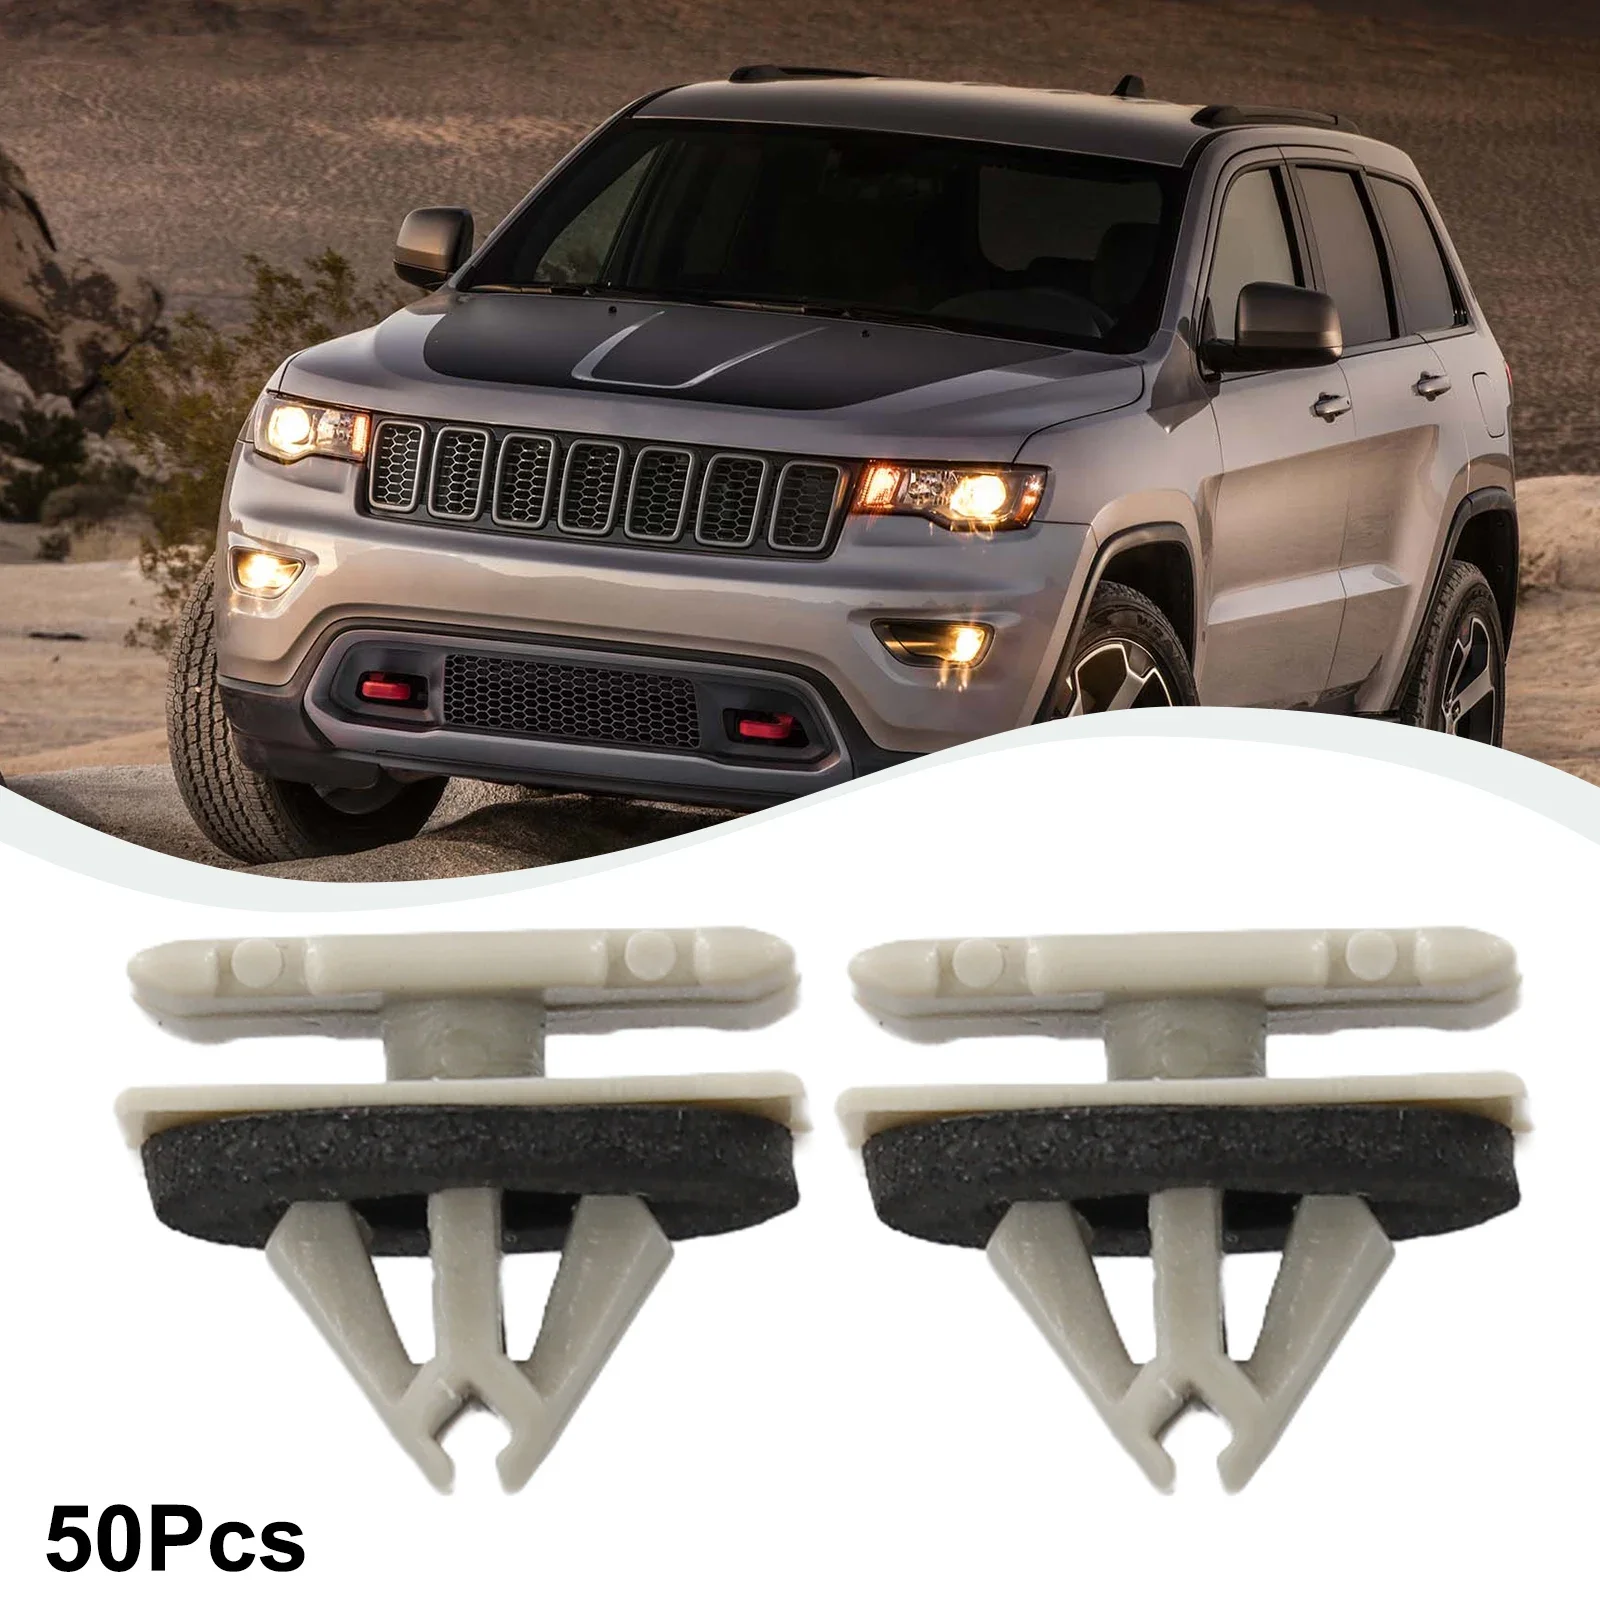 Auto & LKW Teile Nieten 50 Stück für Jeep-Cherokee Moulding Nylon Rocker Trim schwarz und grau Außen verschluss